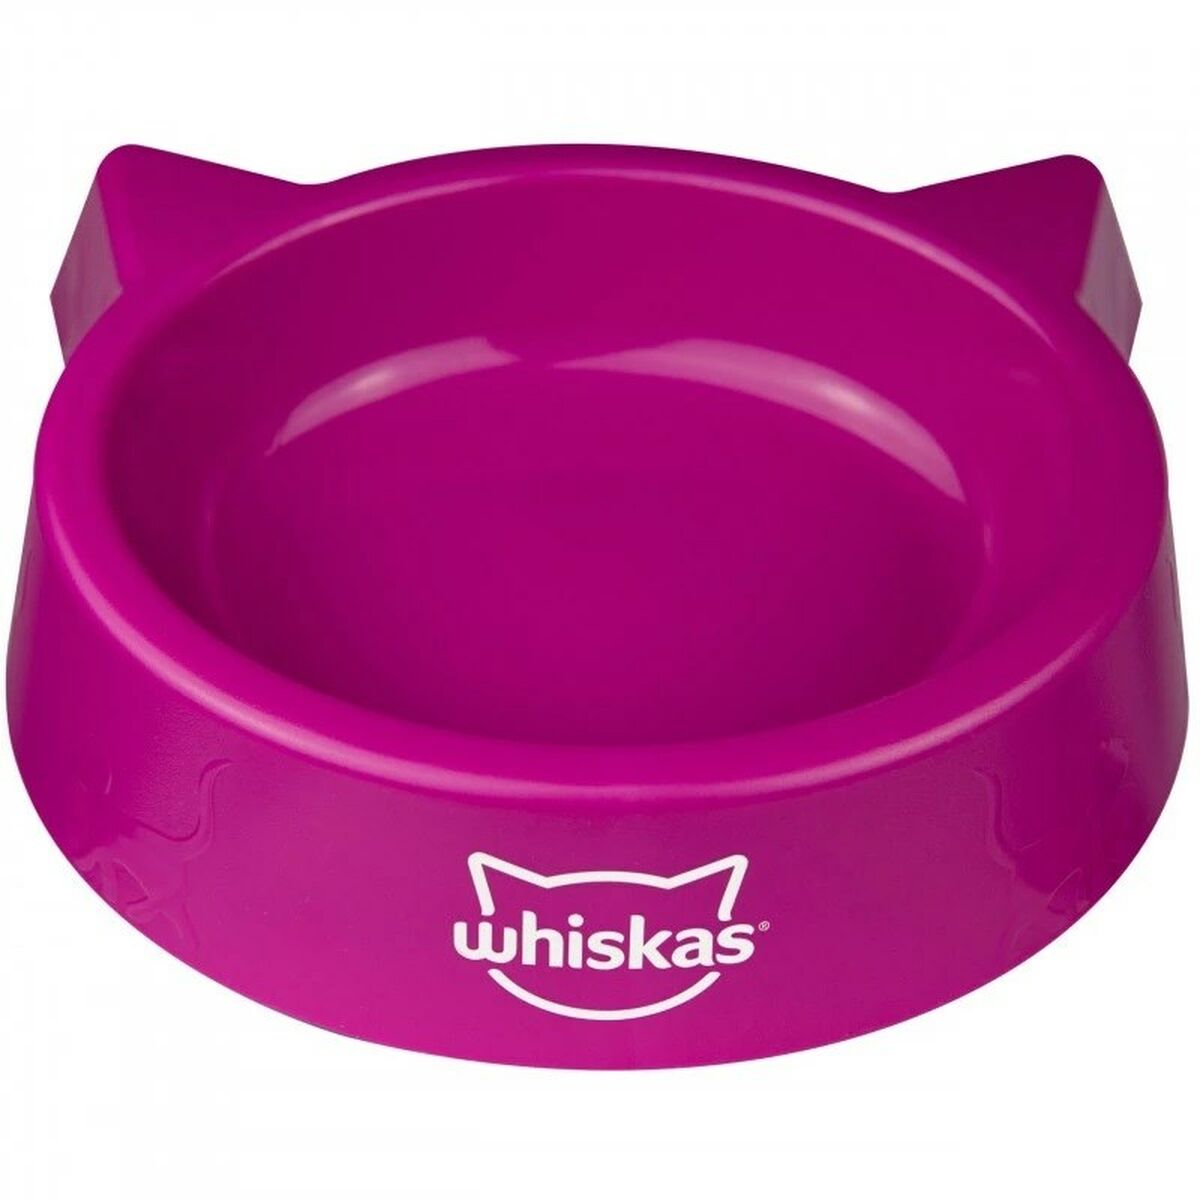 Mangeoire pour chats Whiskas Pourpre Plastique 160 mm